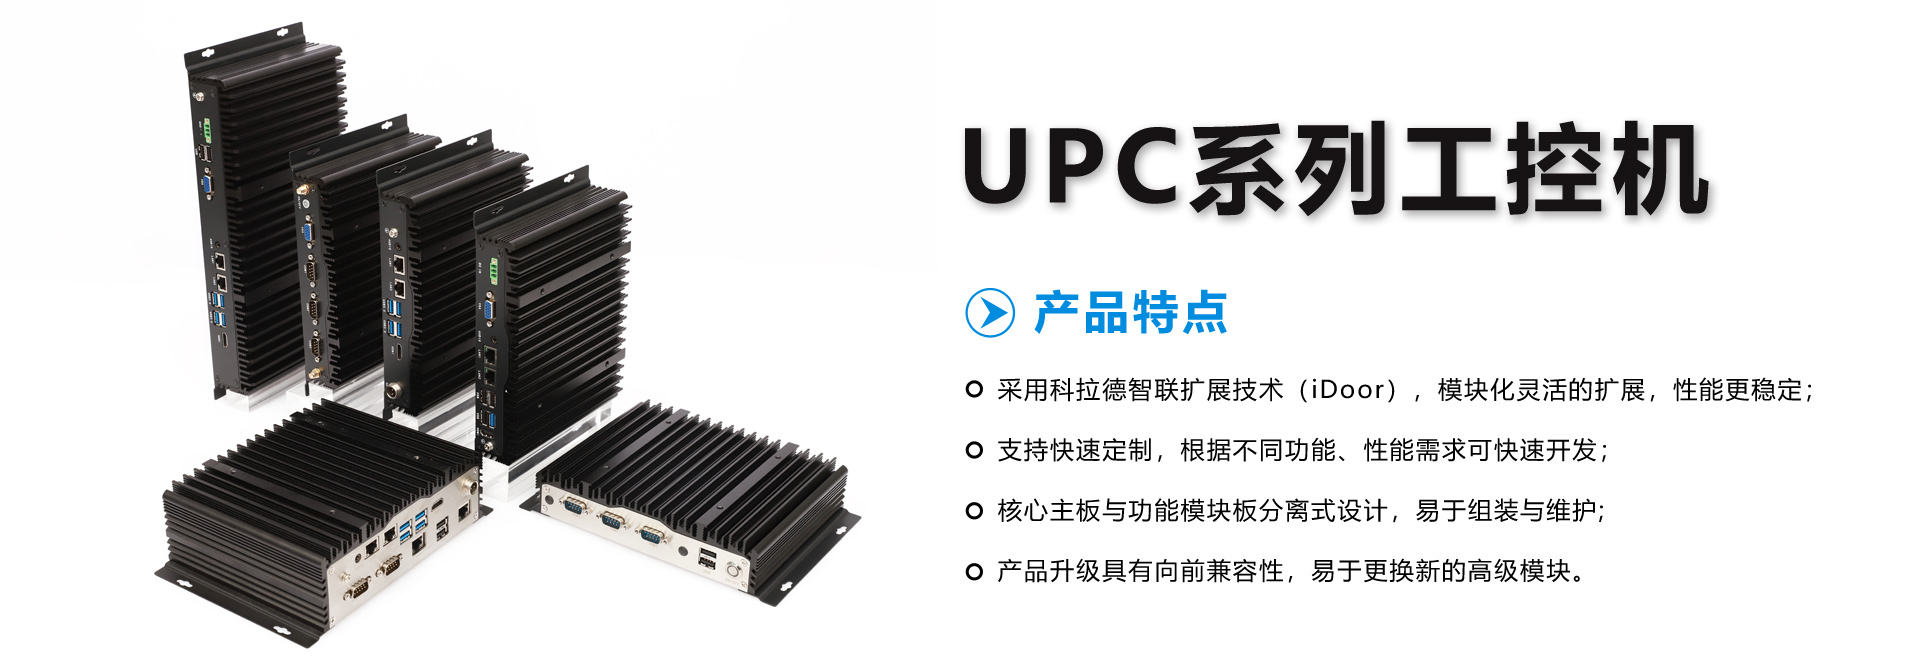 UPC系列工控机